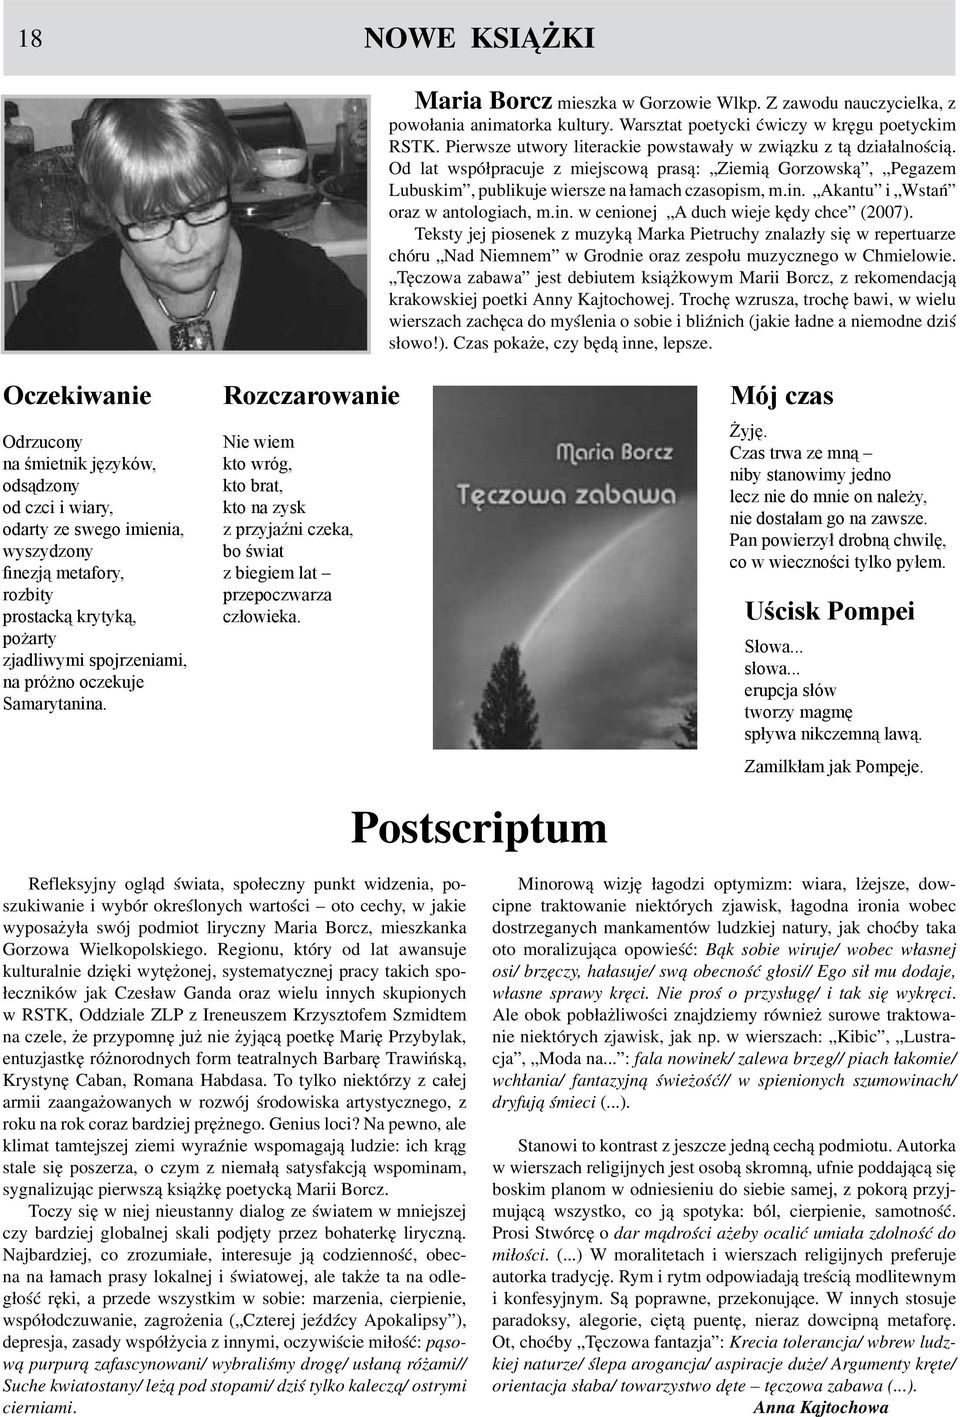 Akantu i Wstań oraz w antologiach, m.in. w cenionej A duch wieje kędy chce (2007).